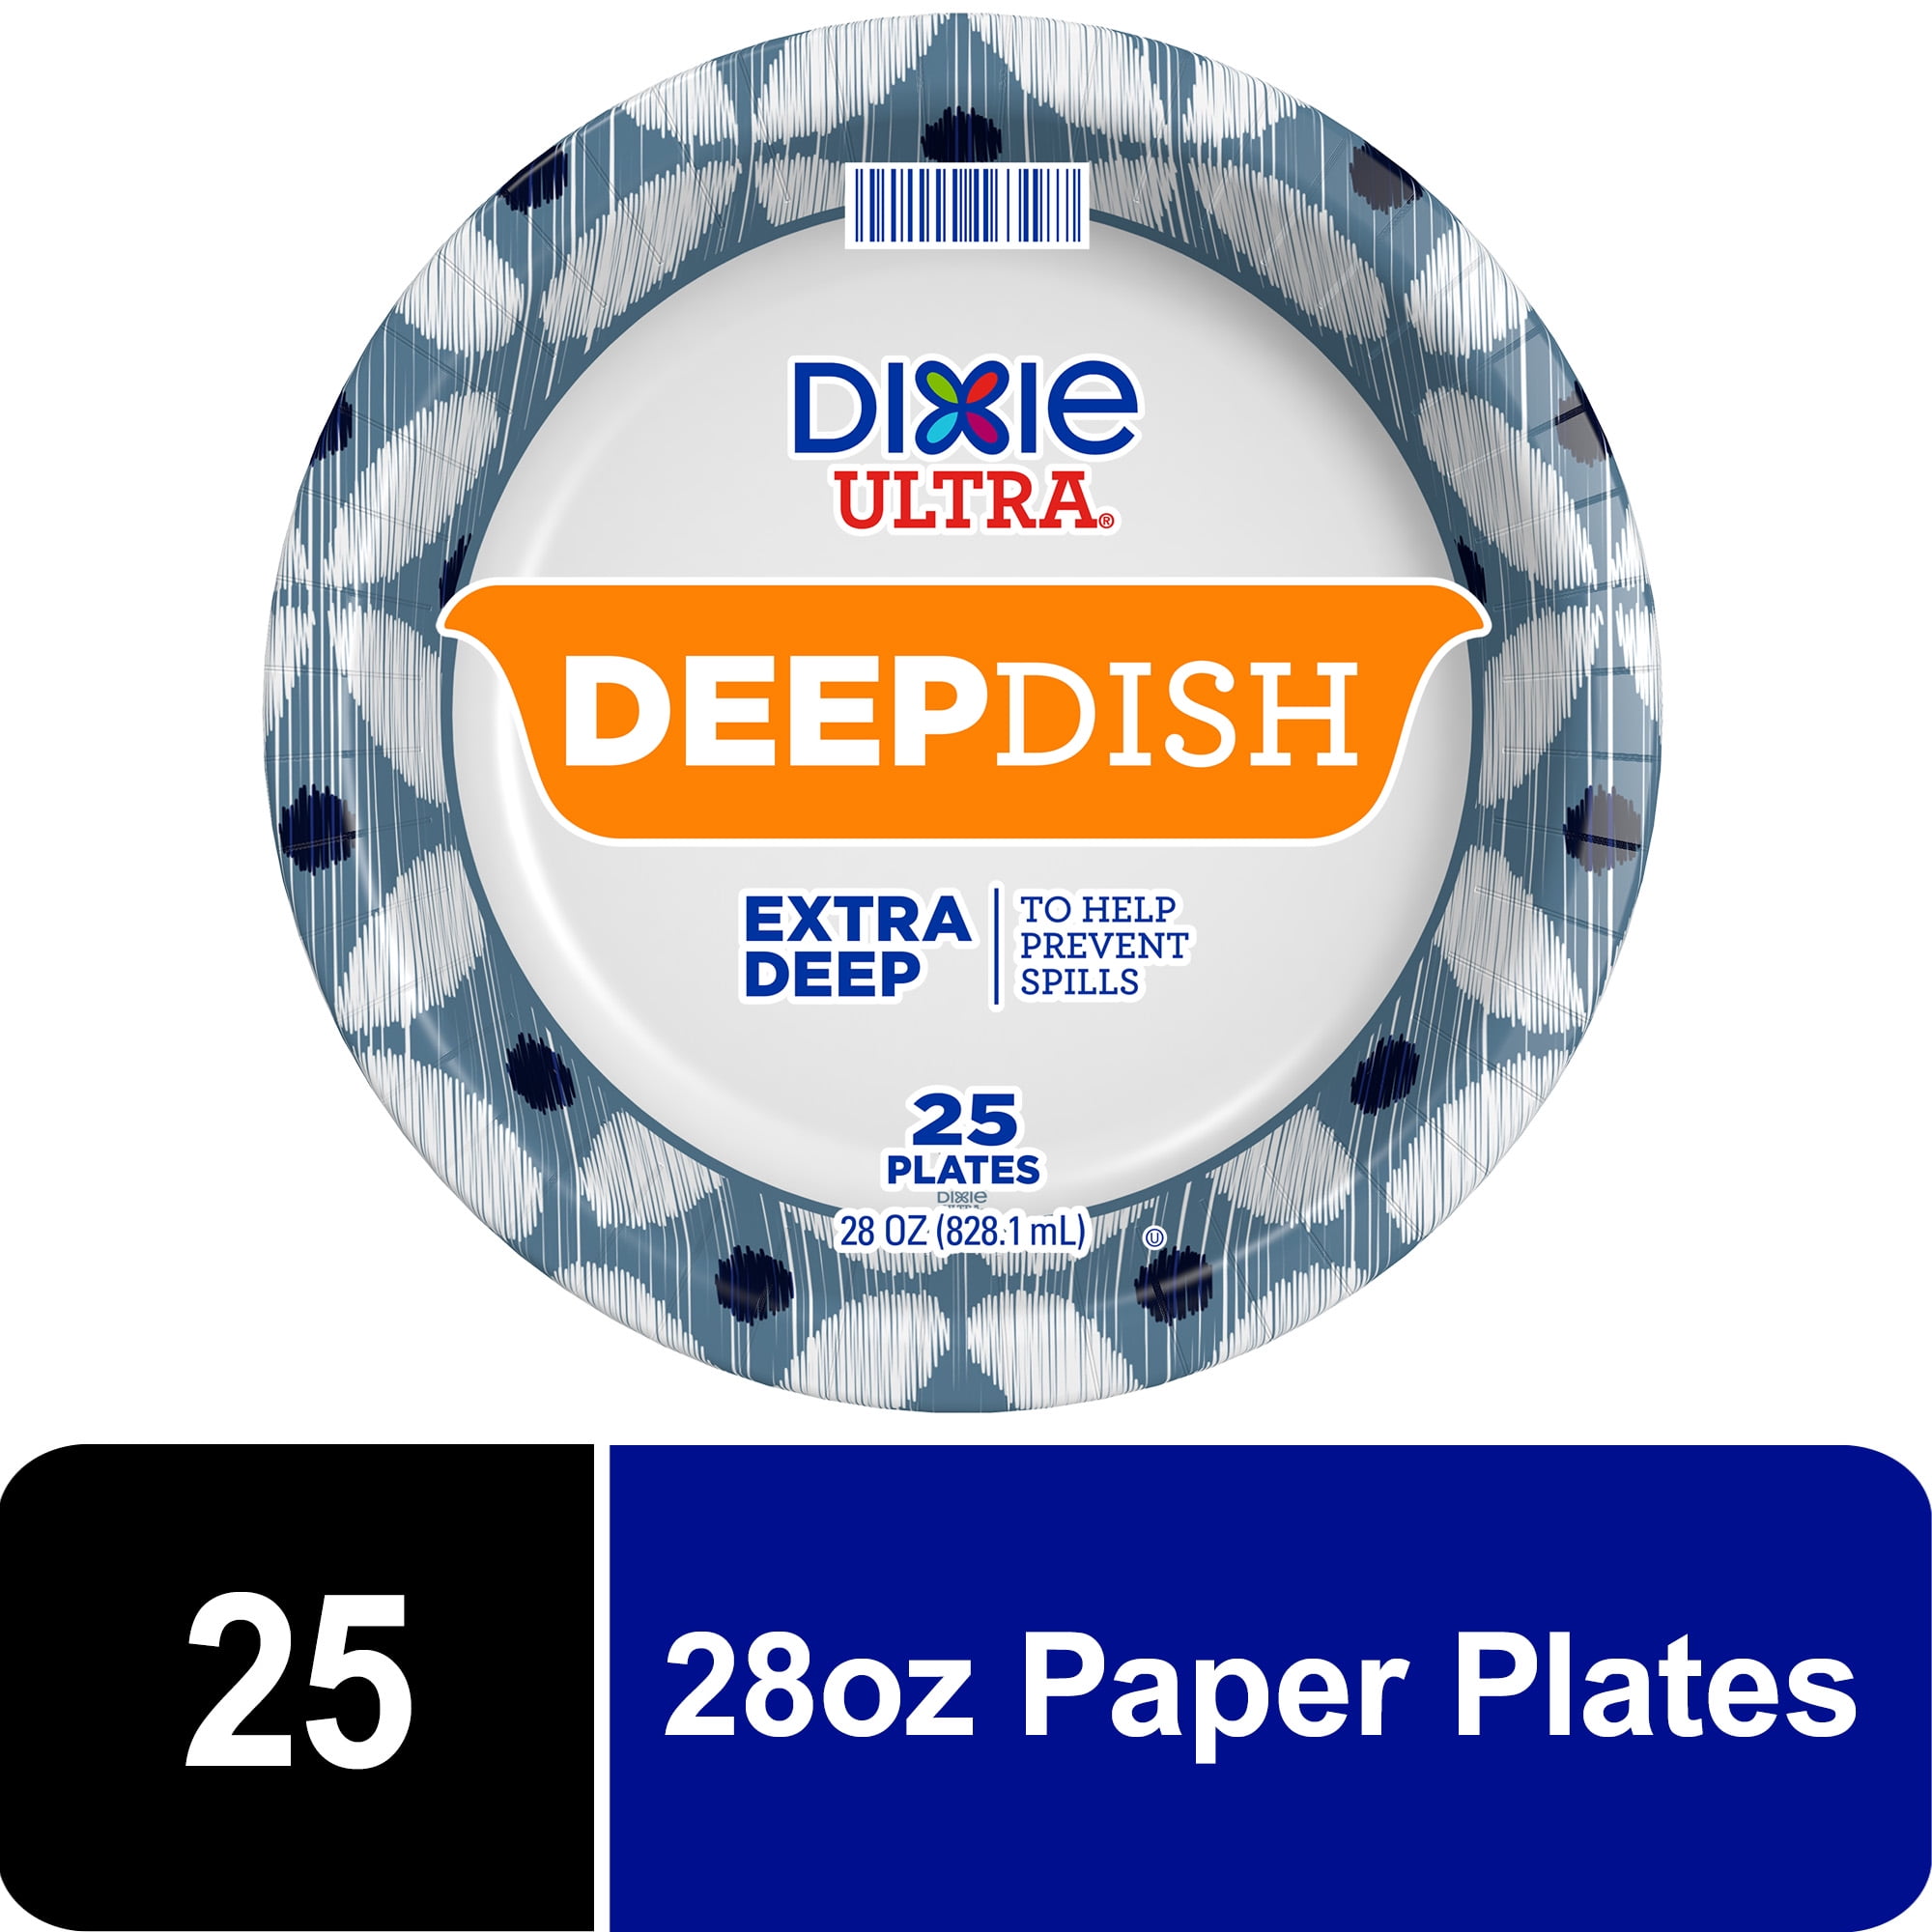 Member's Mark Ultra Dinner Paper Plates (10, 204 ct.)